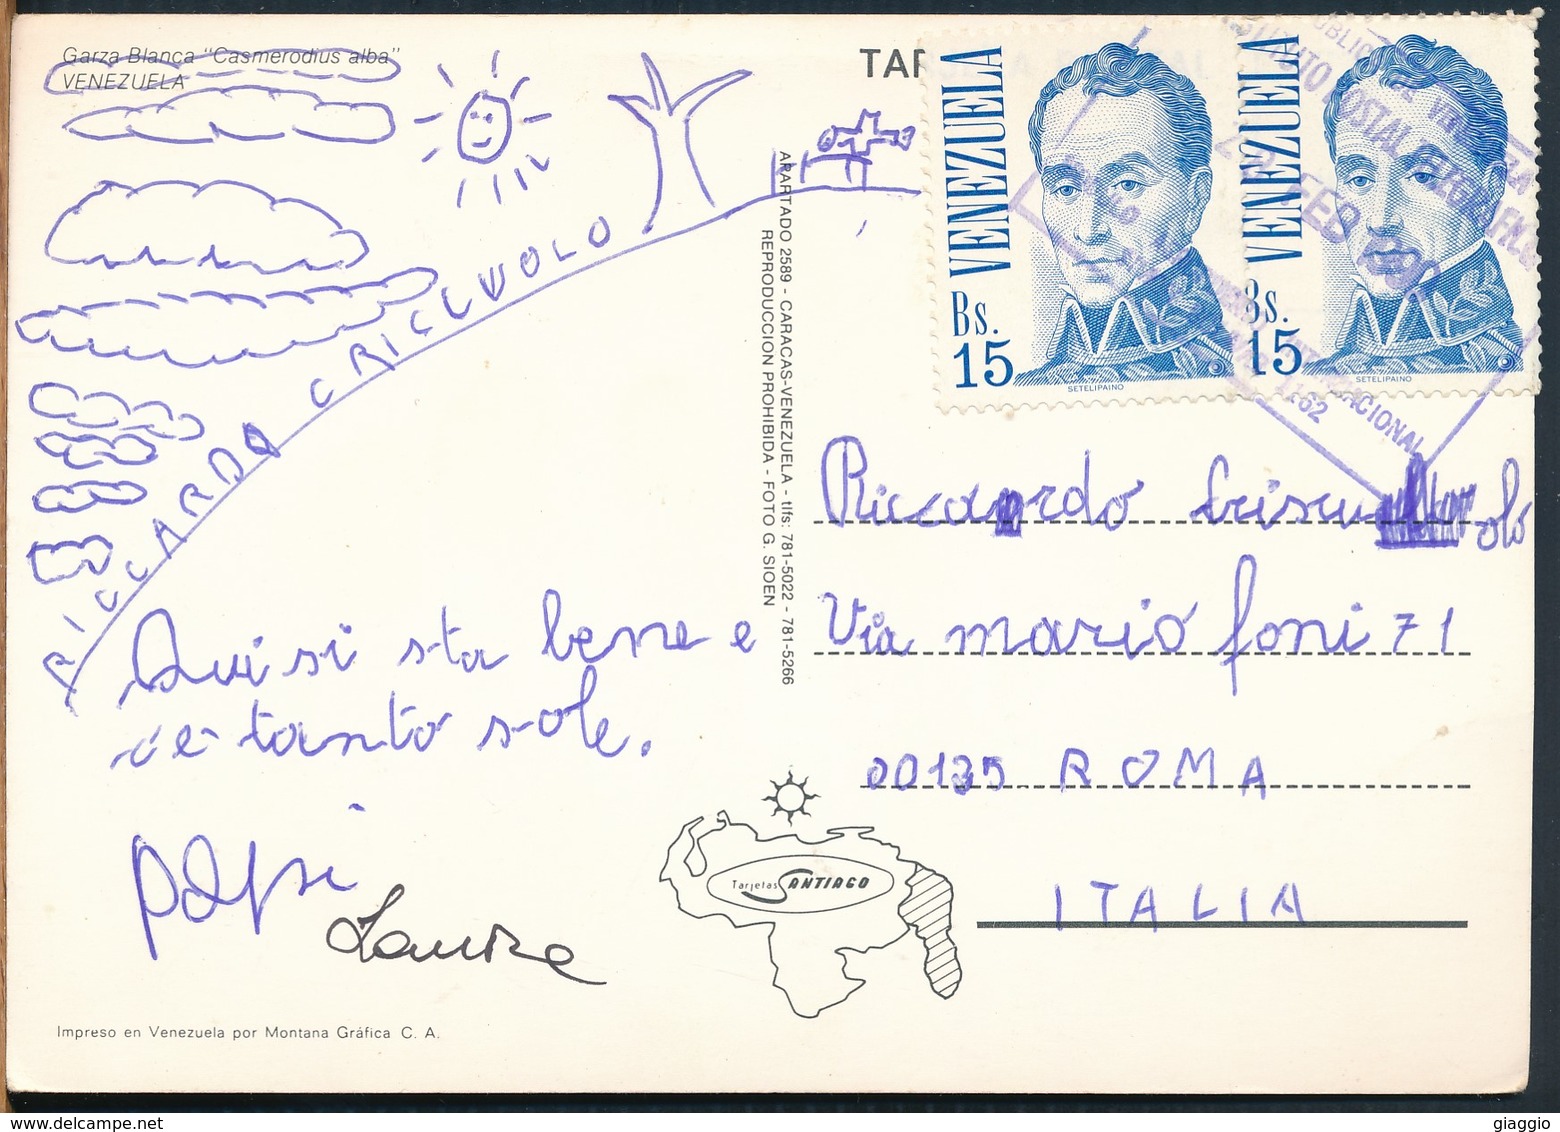 °°° 19181 - VENEZUELA - GARZA BLANCA "CASMERODIUS ALBA " - 1990 With Stamps °°° - Venezuela